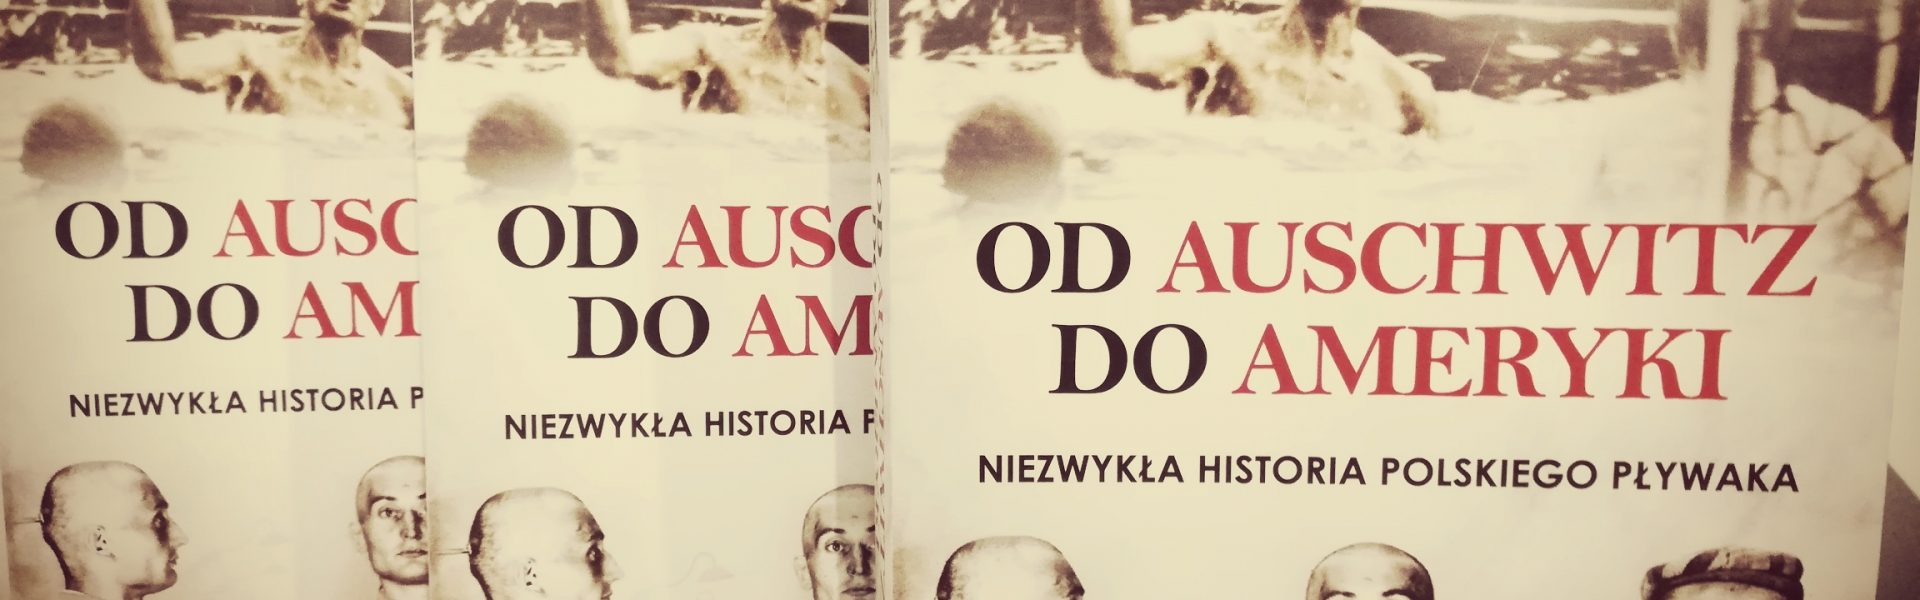 Z Auschwitz do Ameryki. Niezwykła historia polskiego pływaka.